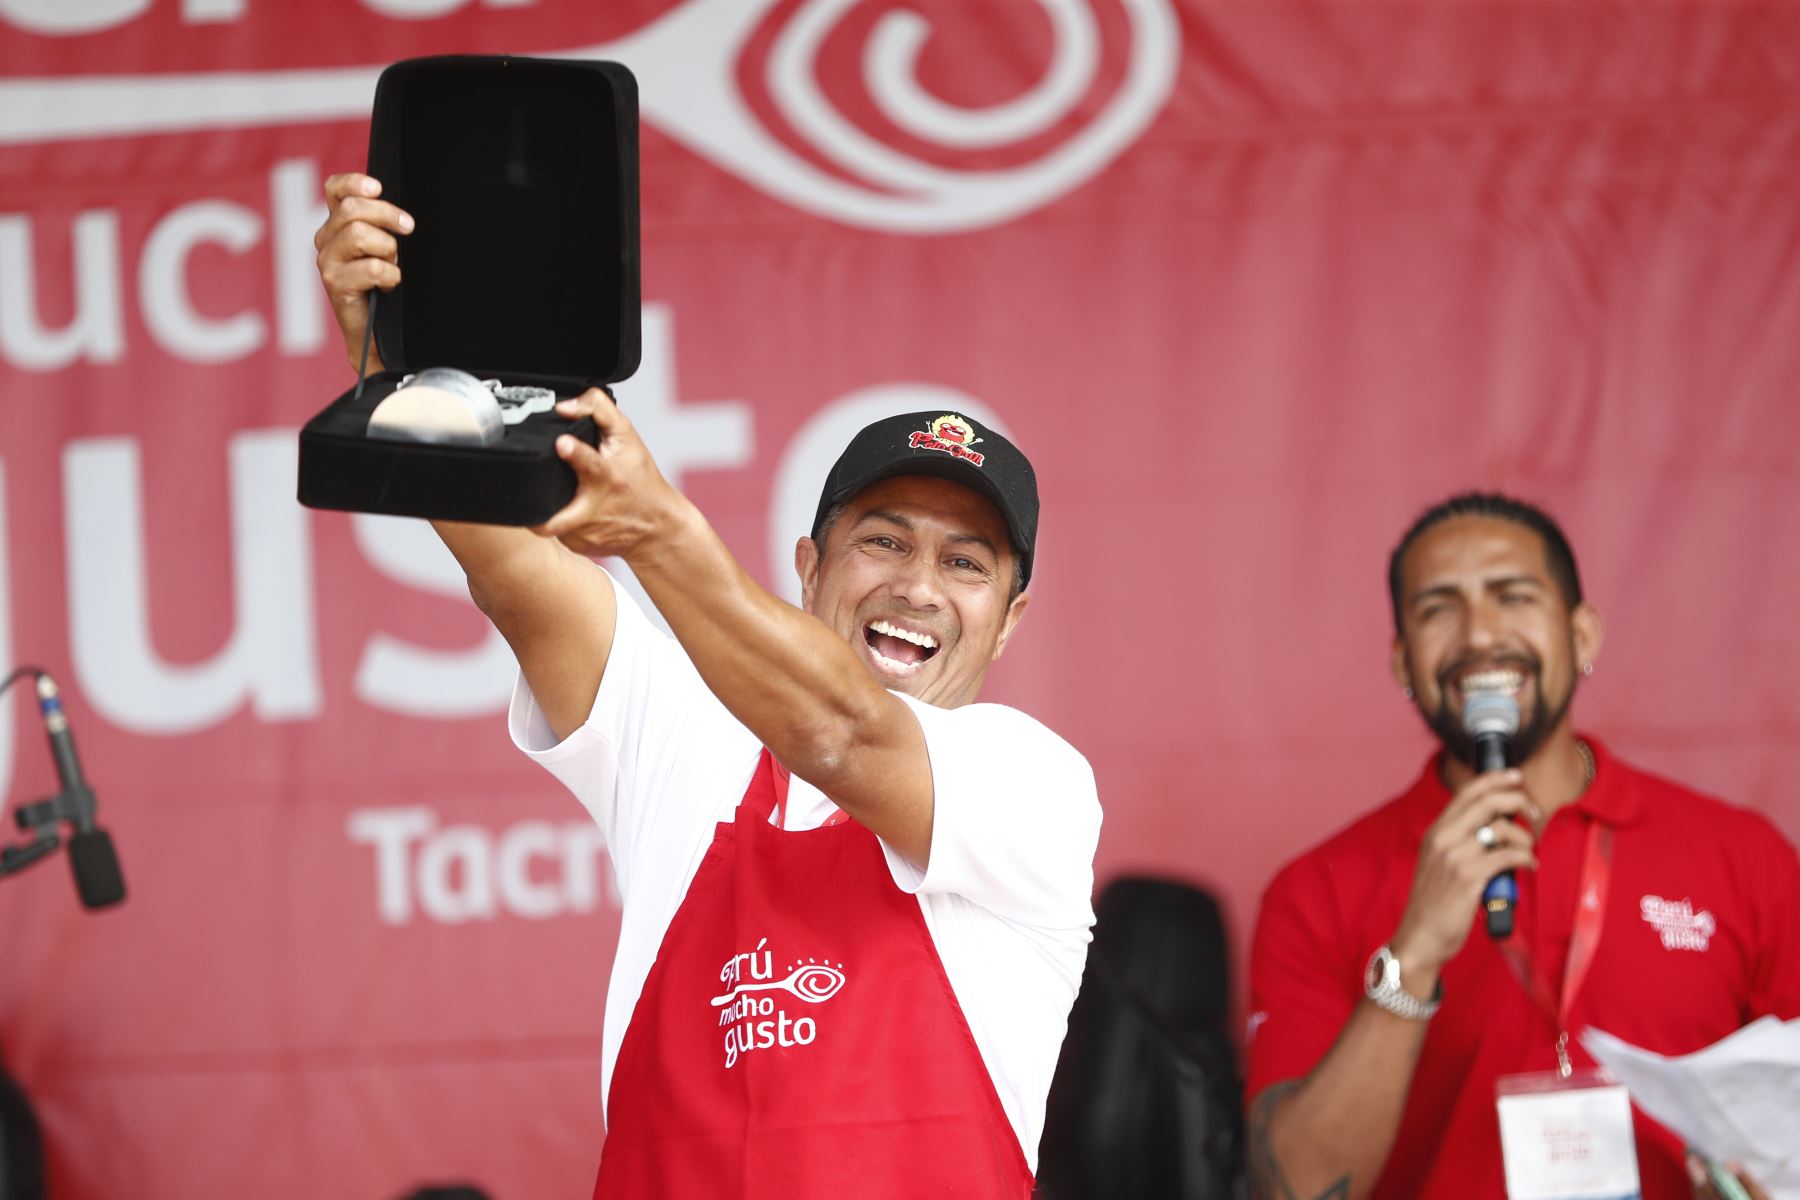 Premiación a la Innovación en el día de cierre de la feria gastronómica Perú Mucho Gusto Tacna 2023.
Foto: ANDINA/ Daniel Bracamonte